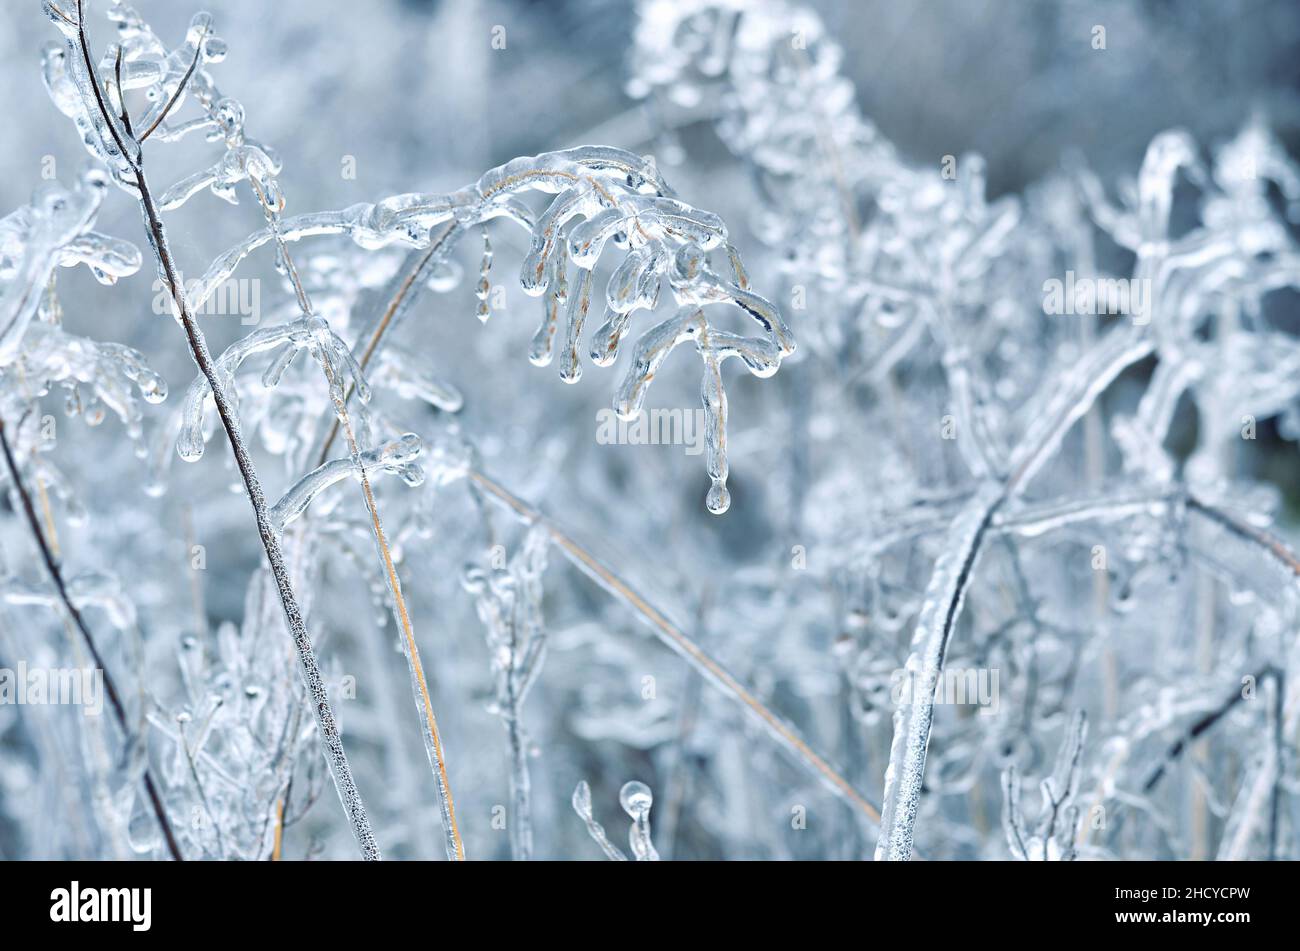 Dettaglio di una pianta asciutta ricoperta di ghiaccio dopo una tempesta di ghiaccio invernale. Effetto della glassa atmosferica. Foto Stock